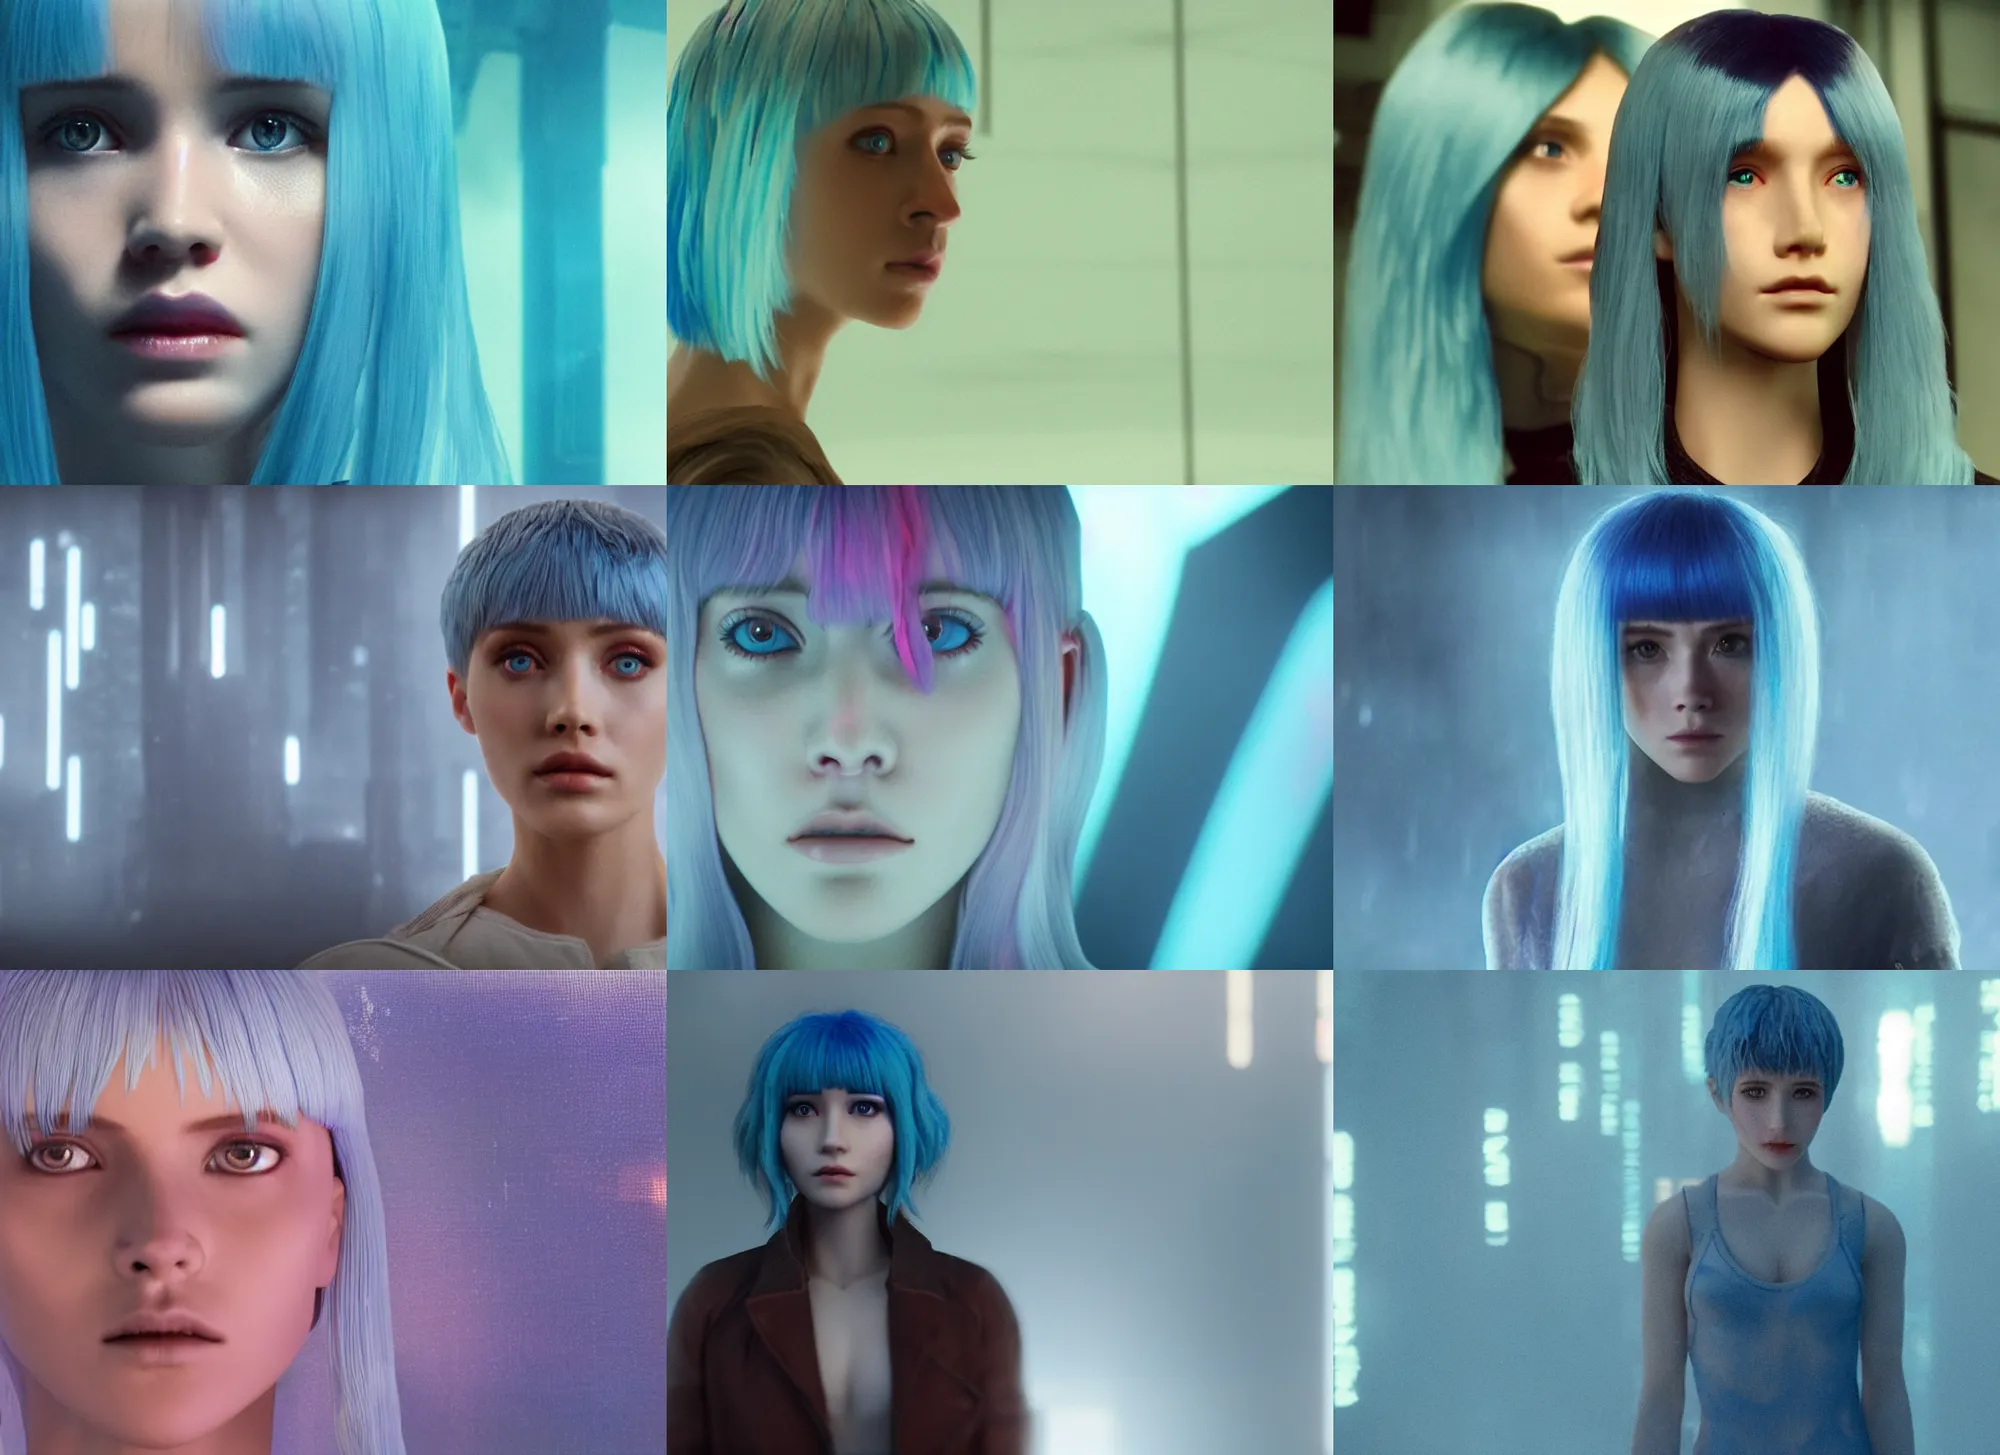 Blade Runner 2049: The Blue-Haired Girl - wide 4